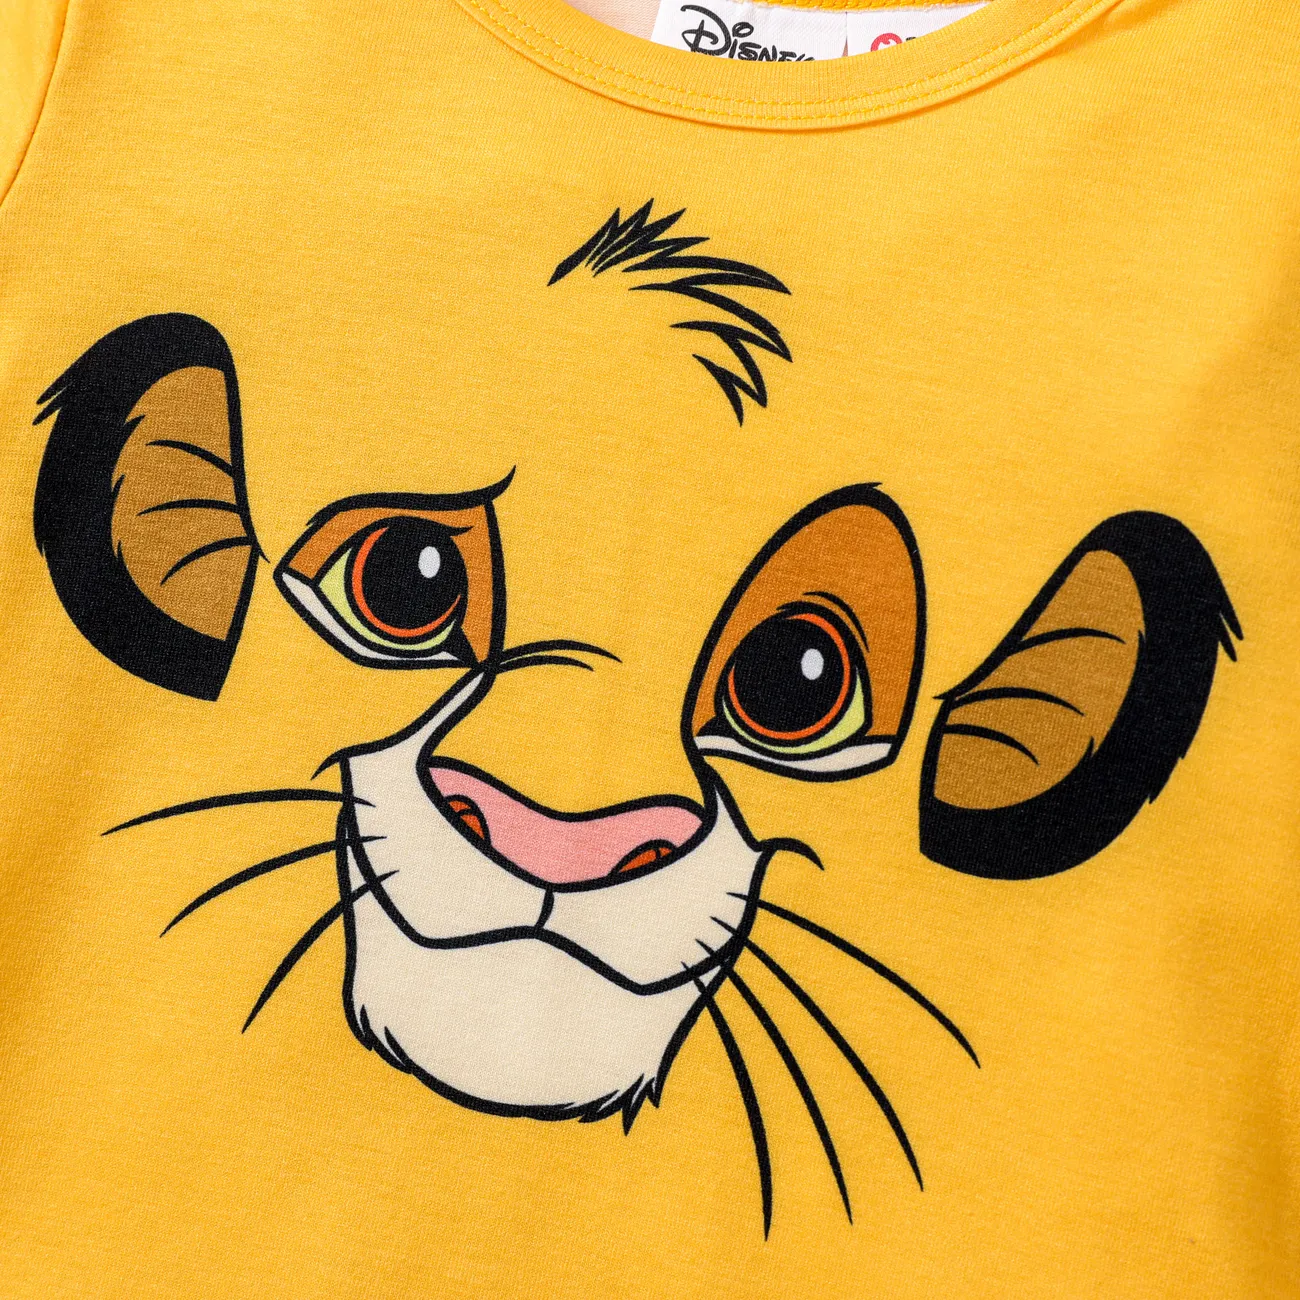 Le Roi Lion de Disney Enfant en bas âge Unisexe Enfantin Manches courtes T-Shirt Jaune big image 1